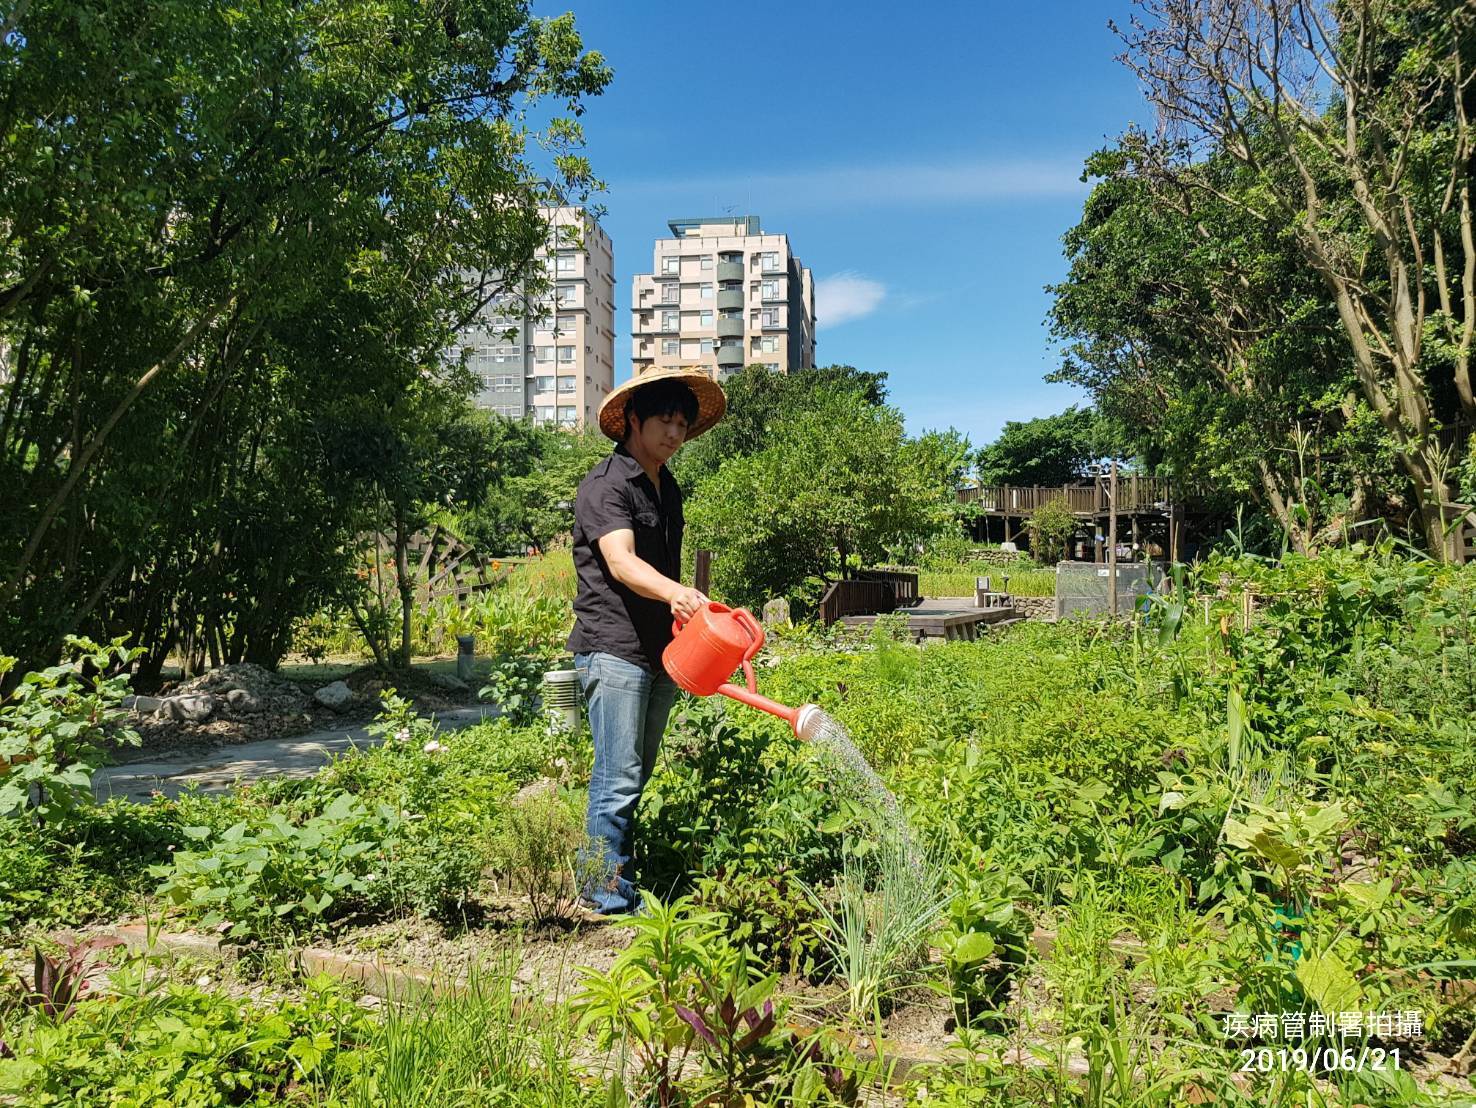 圖1-目前都市菜園改以水龍頭取代儲水桶避免病媒蚊孳生